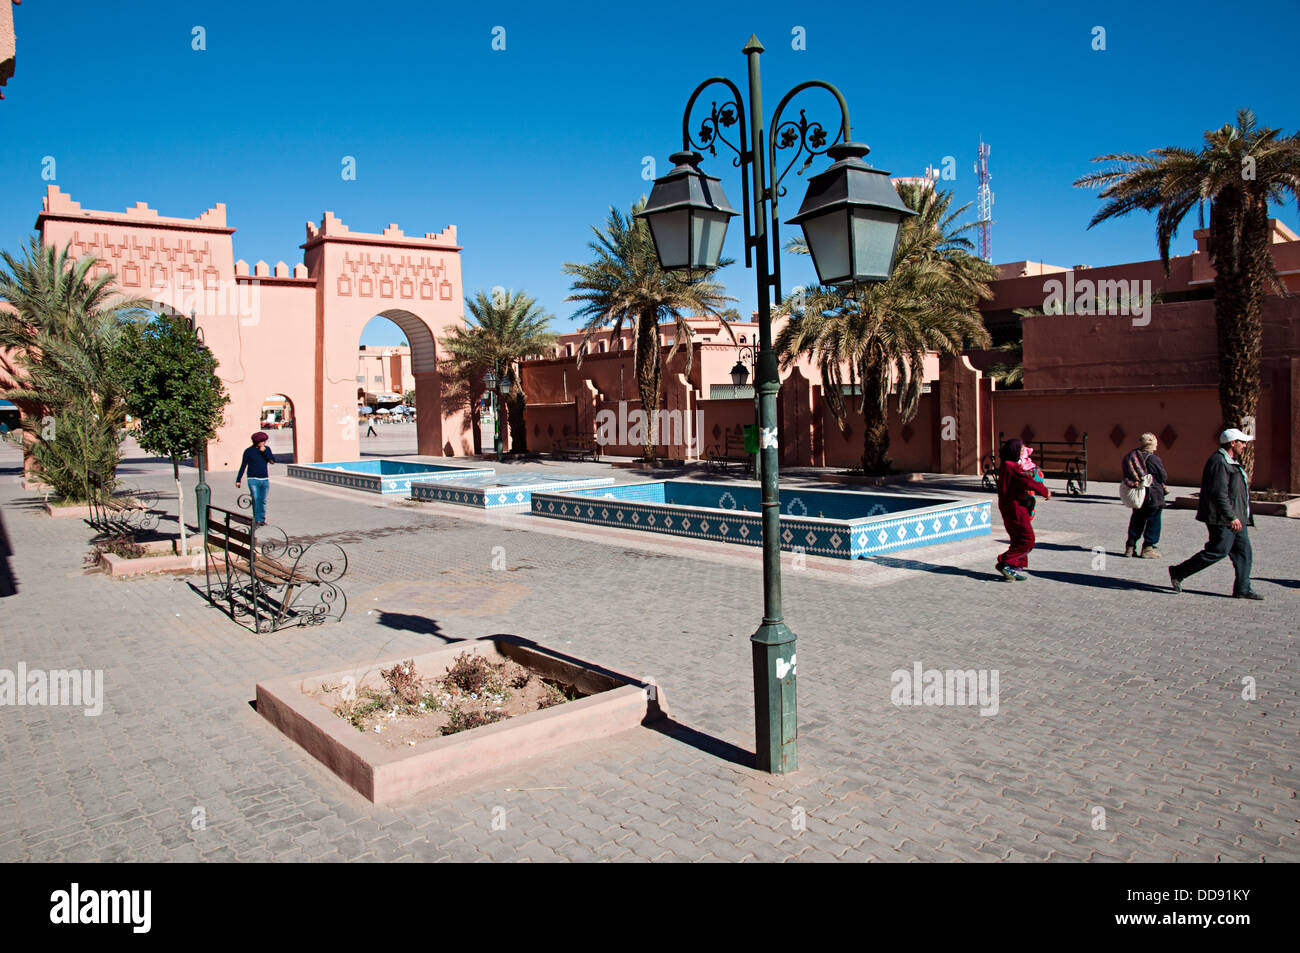 La vie quotidienne dans le centre-ville de Ouarzazate, Maroc Banque D'Images